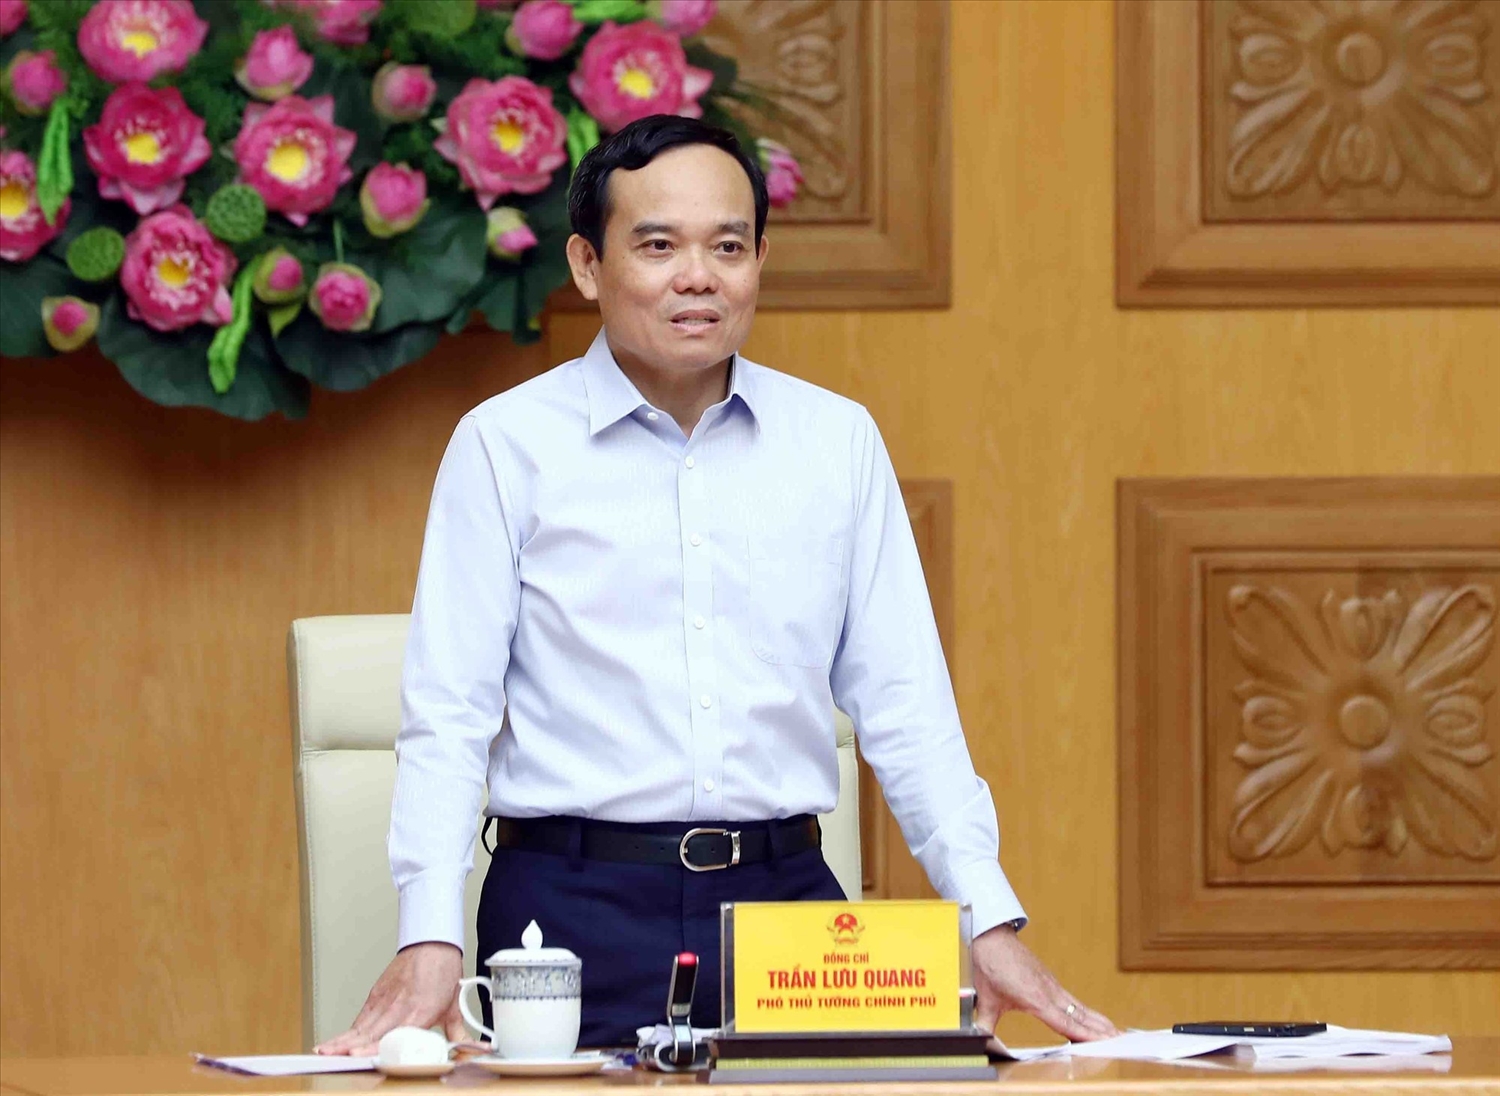 Phó Thủ tướng Trần Lưu Quang nhấn mạnh việc ban hành 2 thông tư nhằm nâng cao tính minh bạch cùng chất lượng và hiệu quả công tác của cán bộ, công chức viên chức, đồng thời tạo tiền đề để cải cách chế độ tiền lương - Ảnh: VGP/Hải Minh